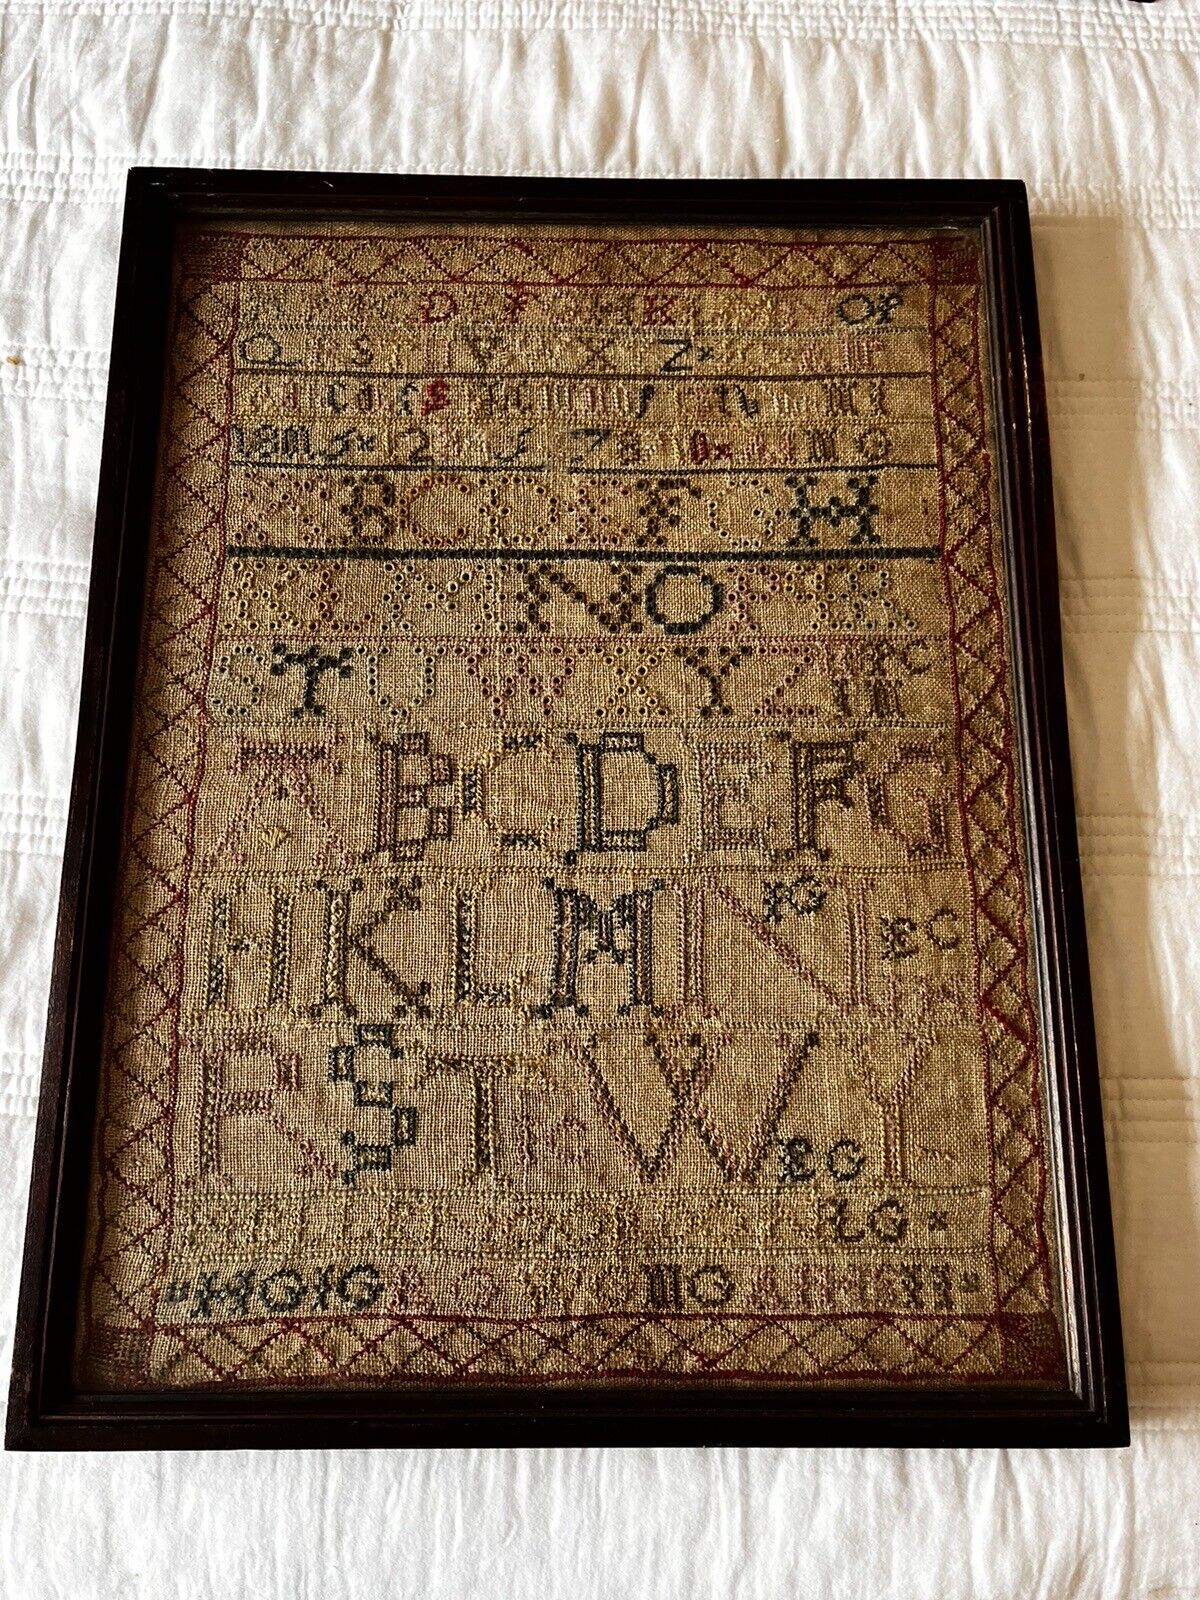 Antique Early Sampler Embroidered on Linen Alphabet Framed